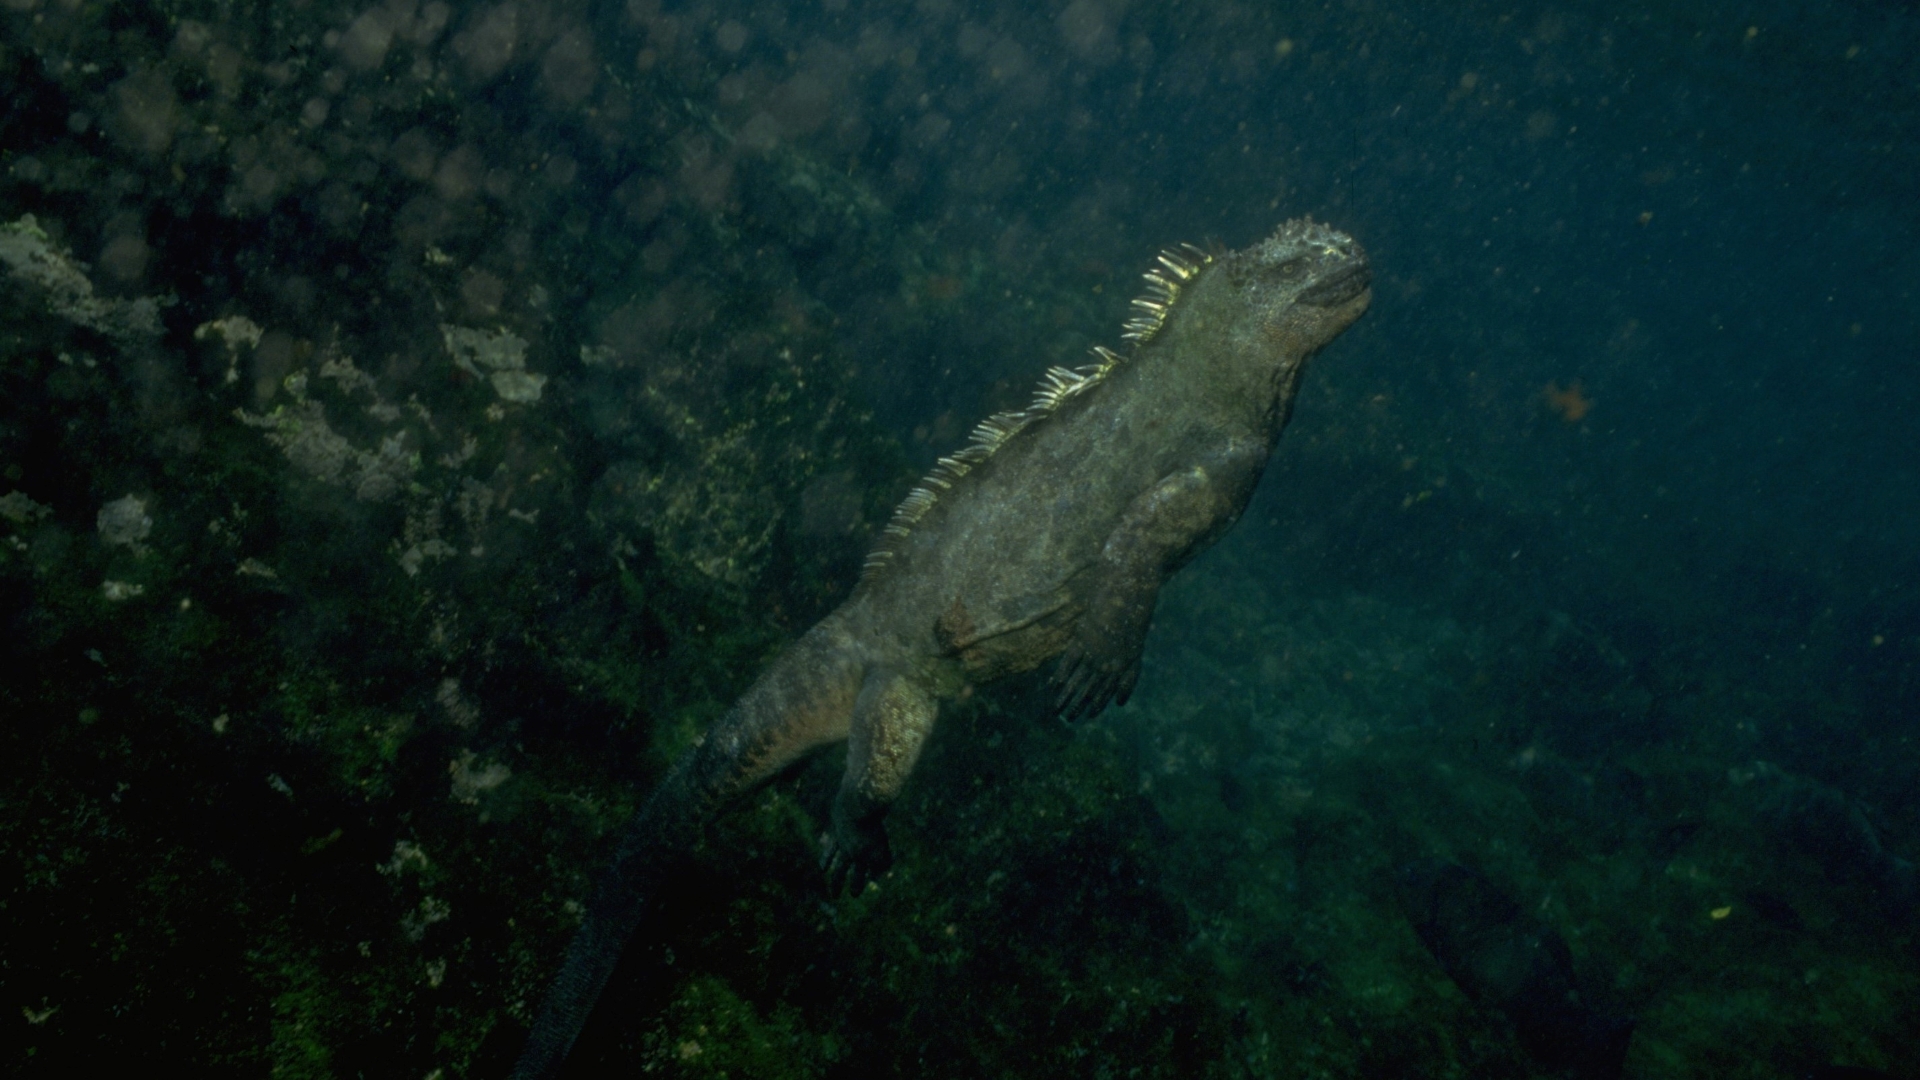 A marine iguana swimming underwater.